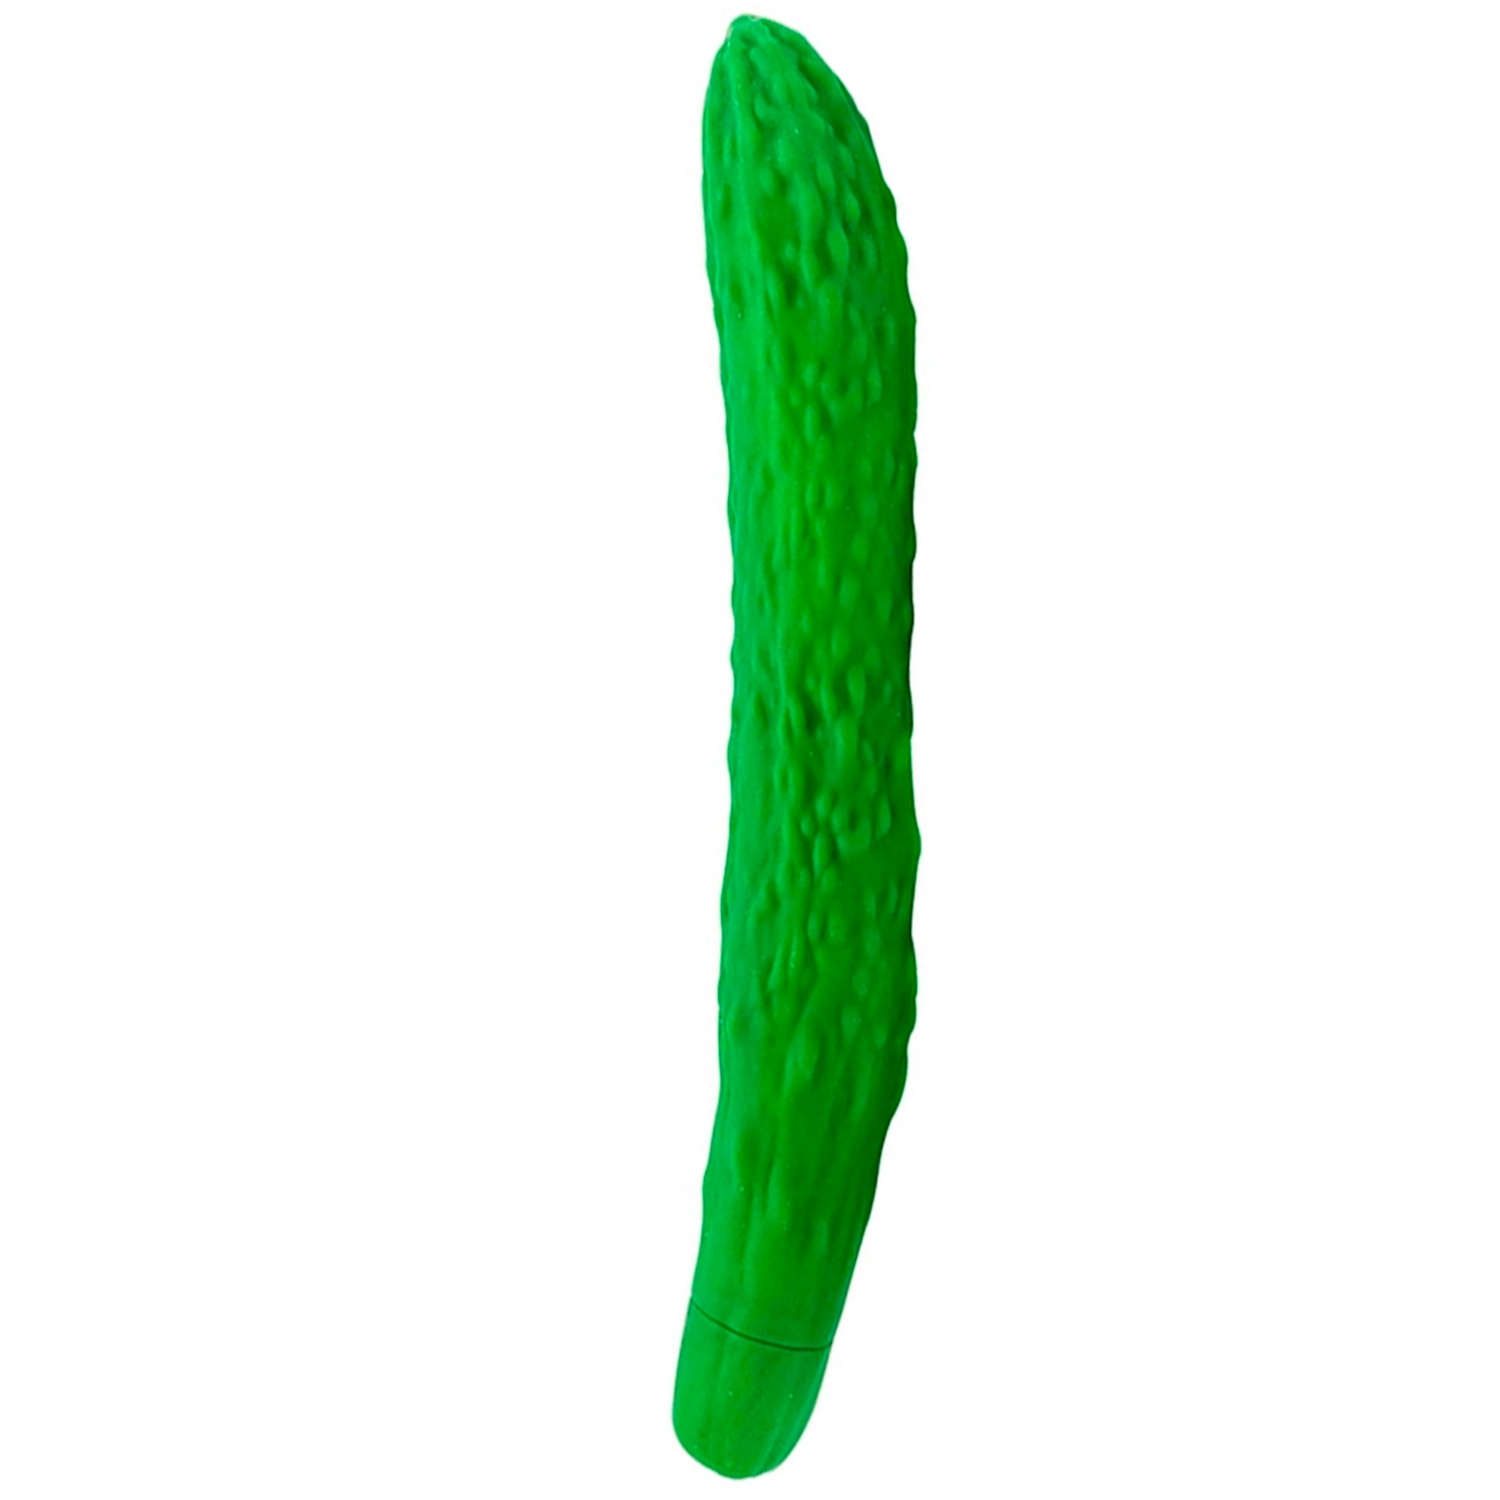 Gemüse The Cucumber Dildovibrator - Grön